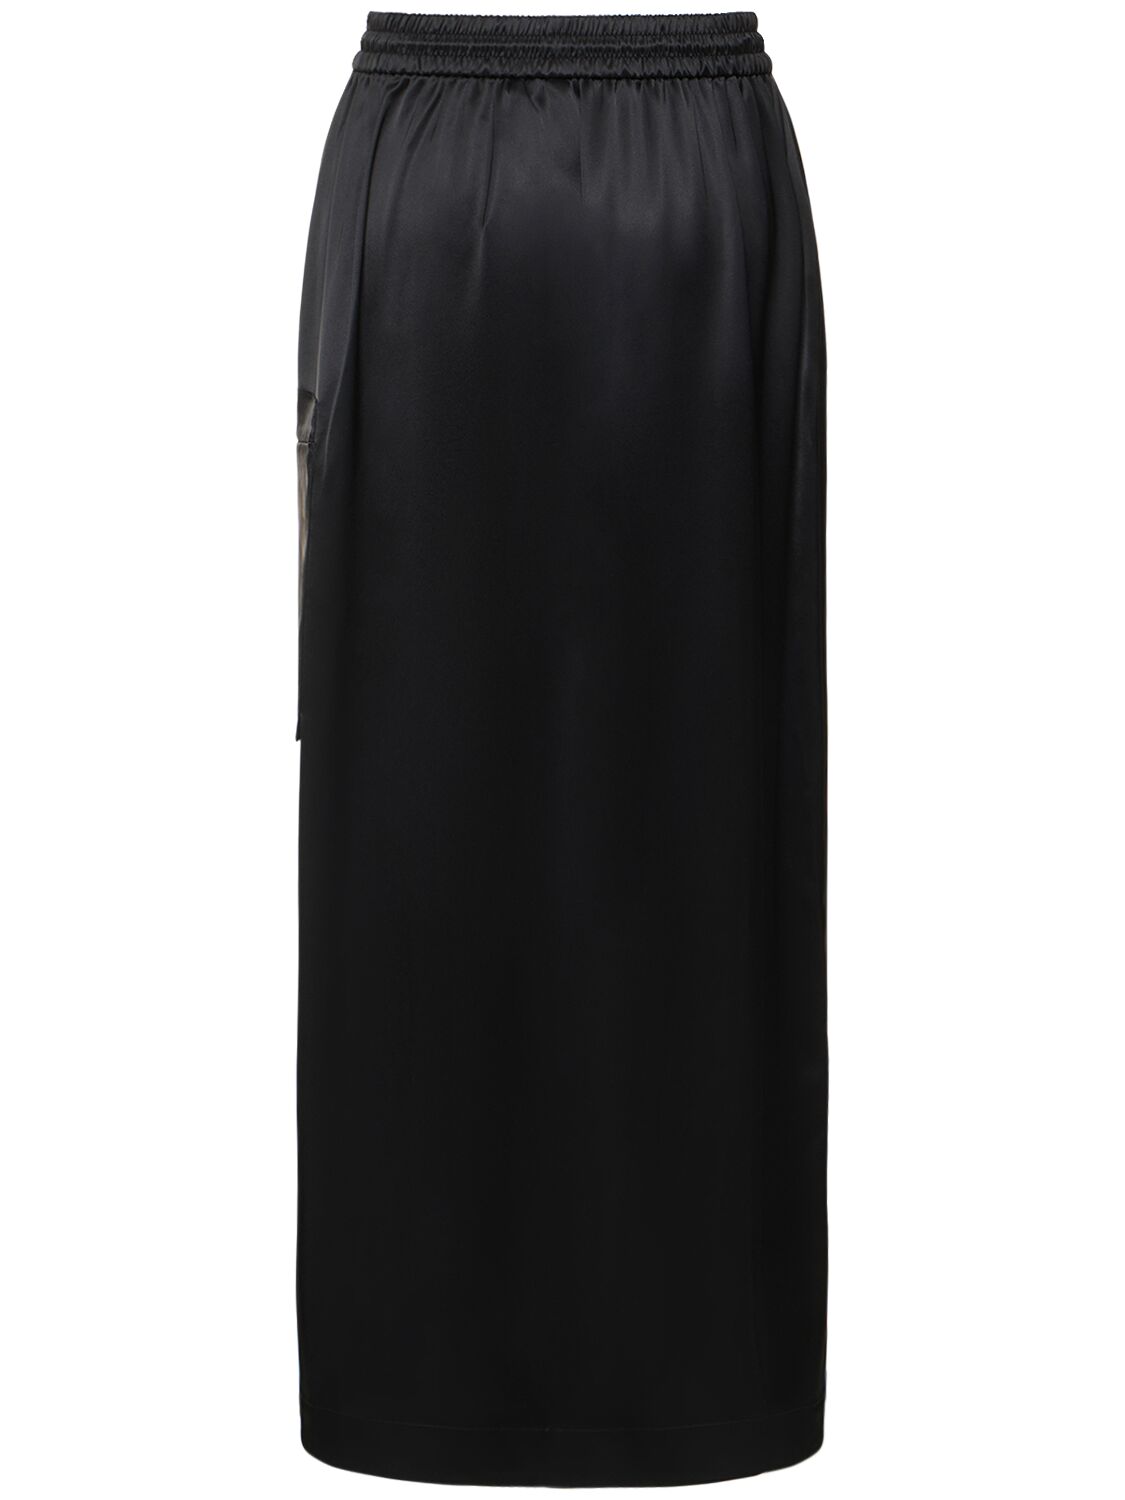 Y-3 Tch Slk Skirt In White/black | ModeSens